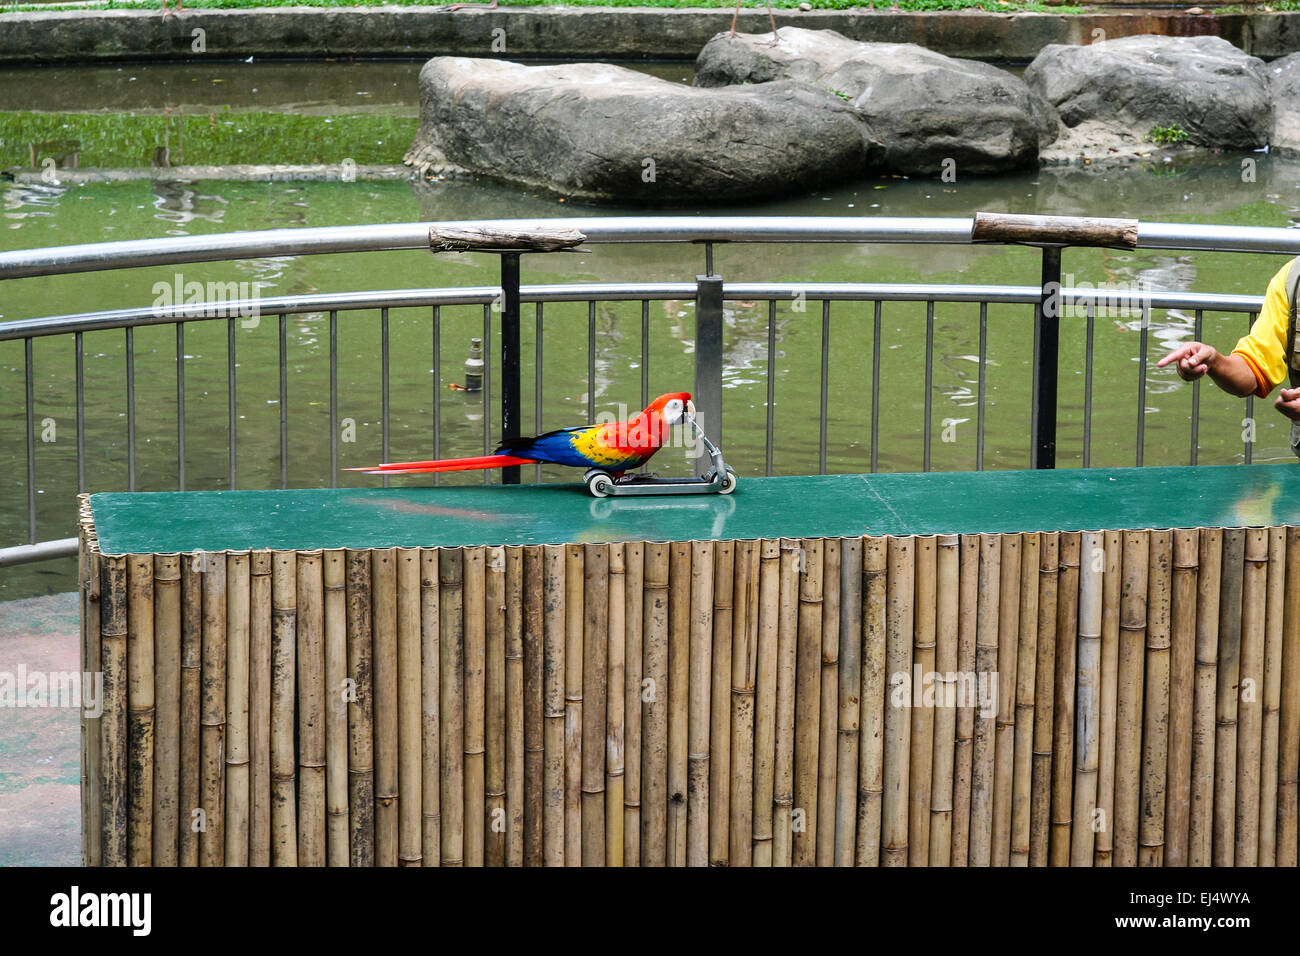 Kuala Lumpur Bird Park, Kuala Lumpur, Malaysia. Parrot 'riding' scooter during trained bird show. Stock Photo